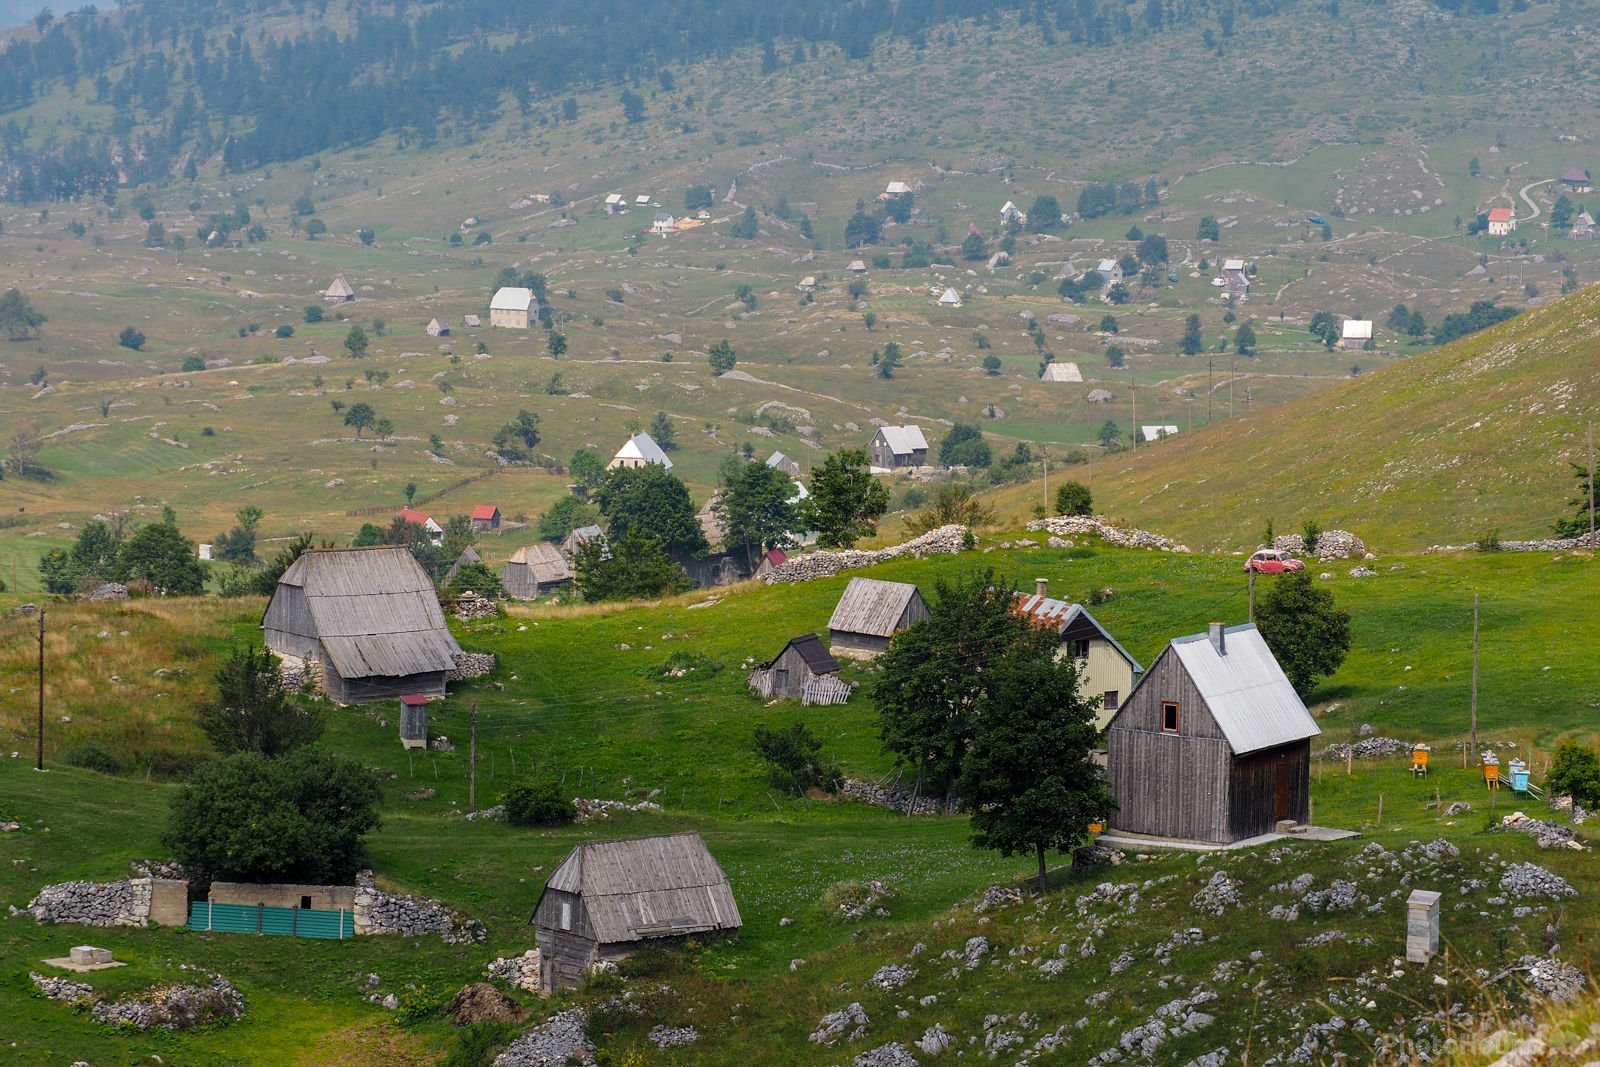 Image of Mala Crna Gora Village by Saša Jamšek